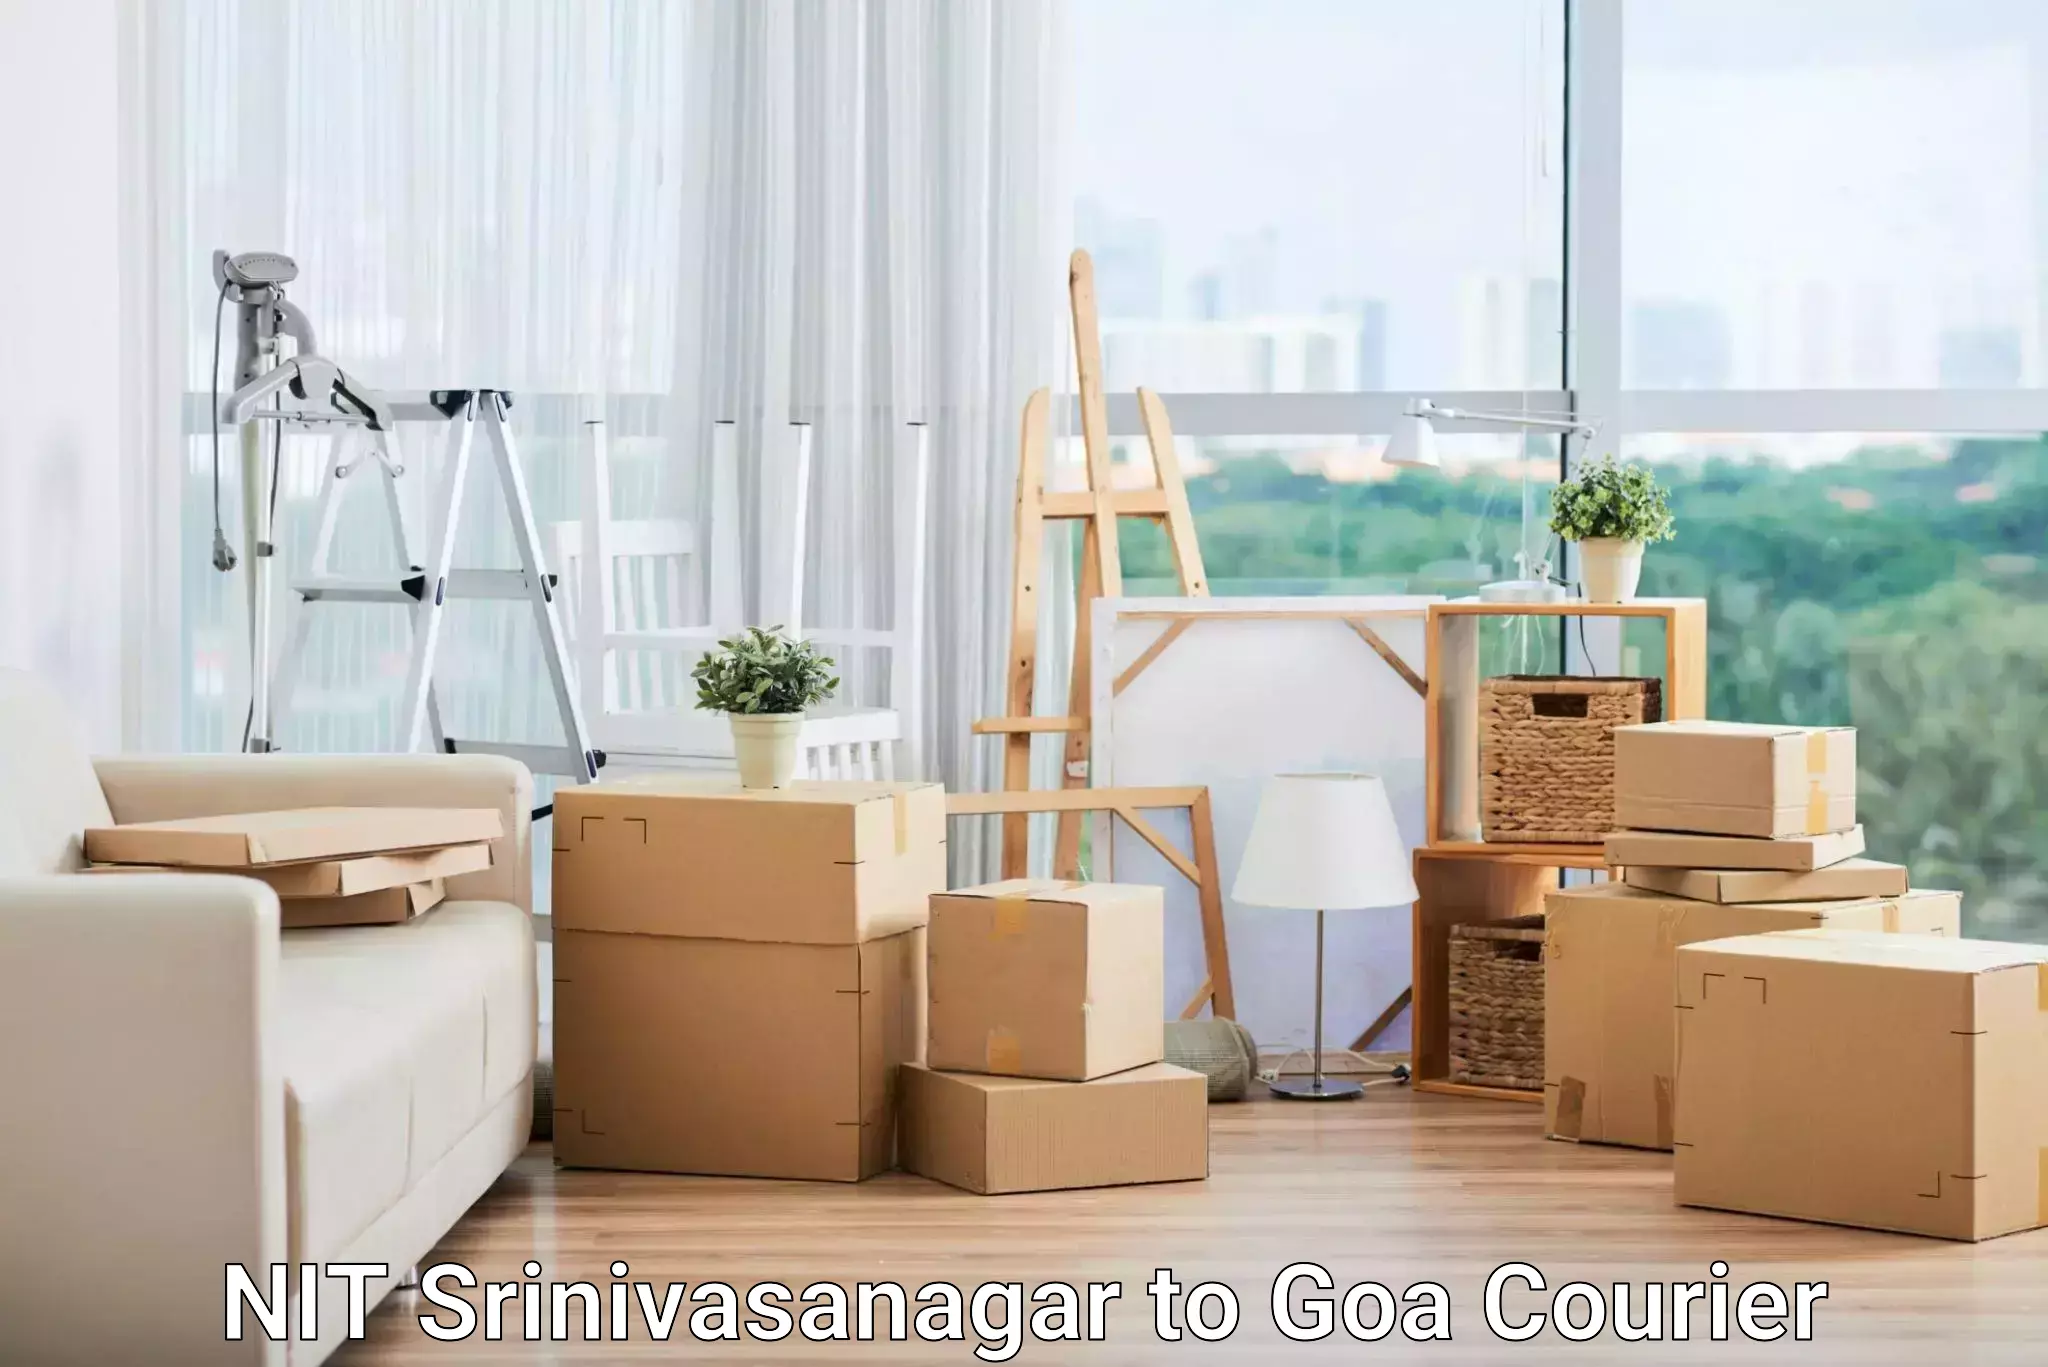 Speedy delivery service NIT Srinivasanagar to Goa University